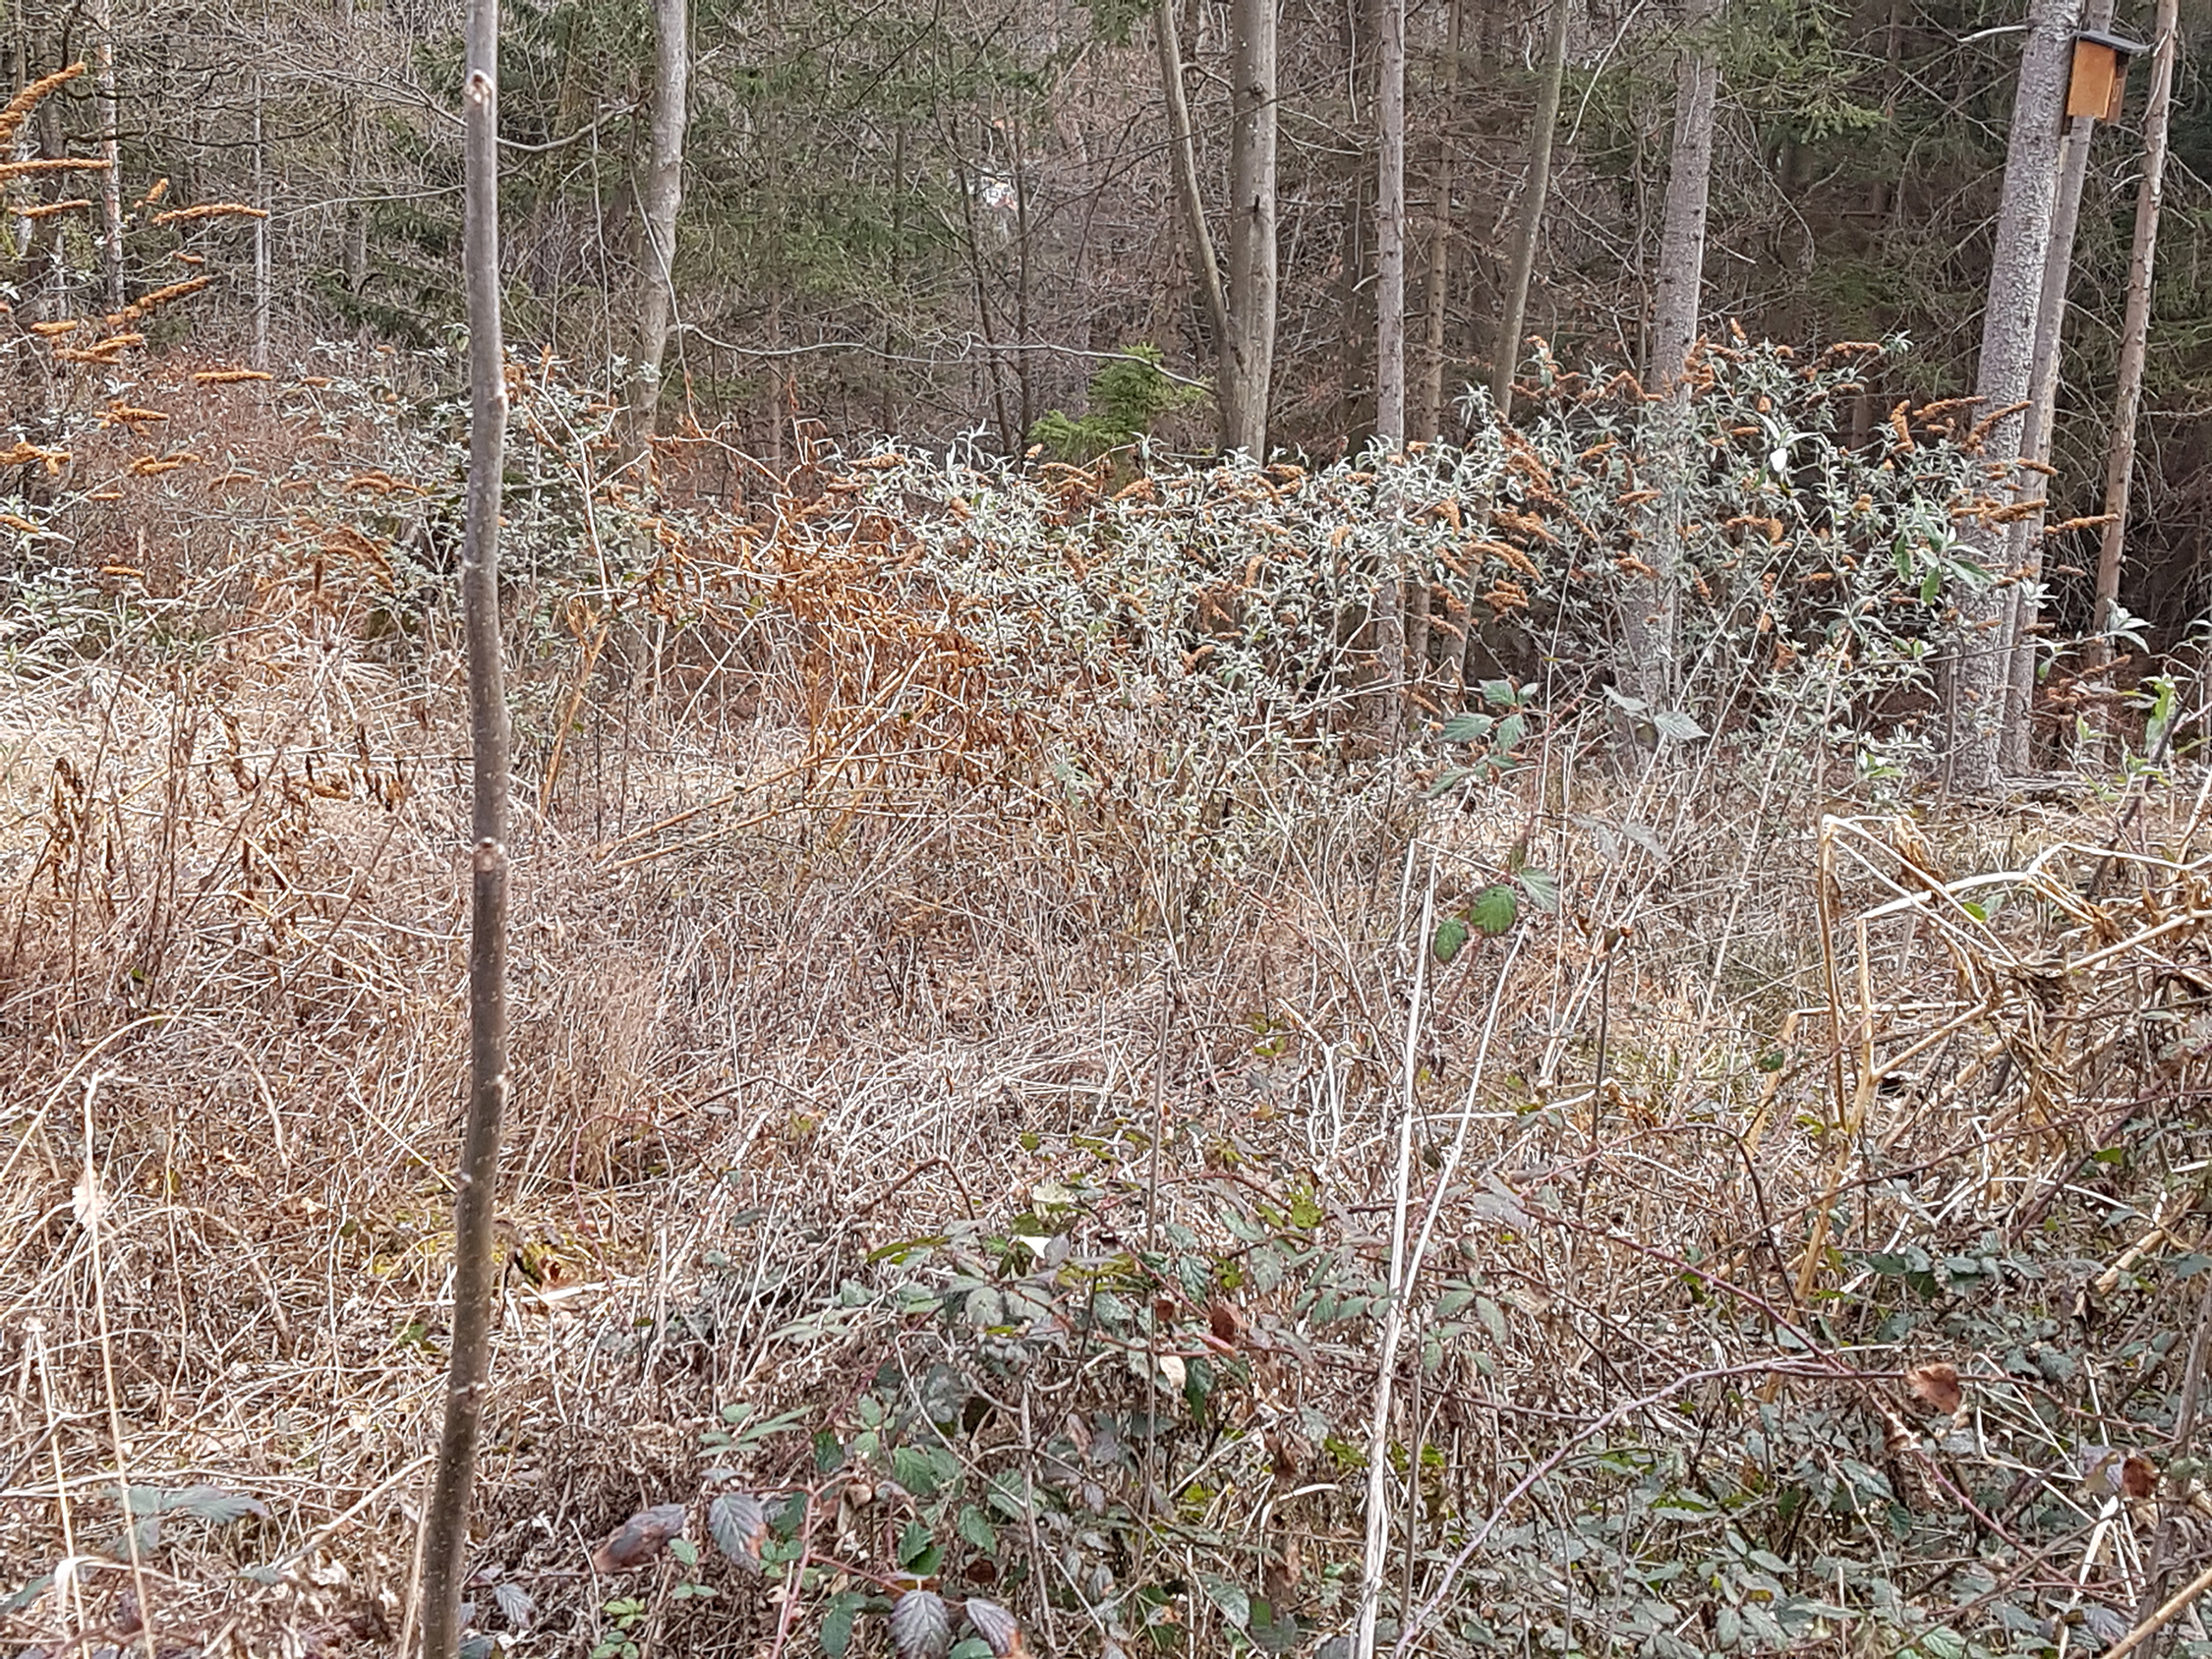 Zahlreiche verwilderte Pflanzen mit Fruchtständen auf einer Schlagfläche am Waldrand